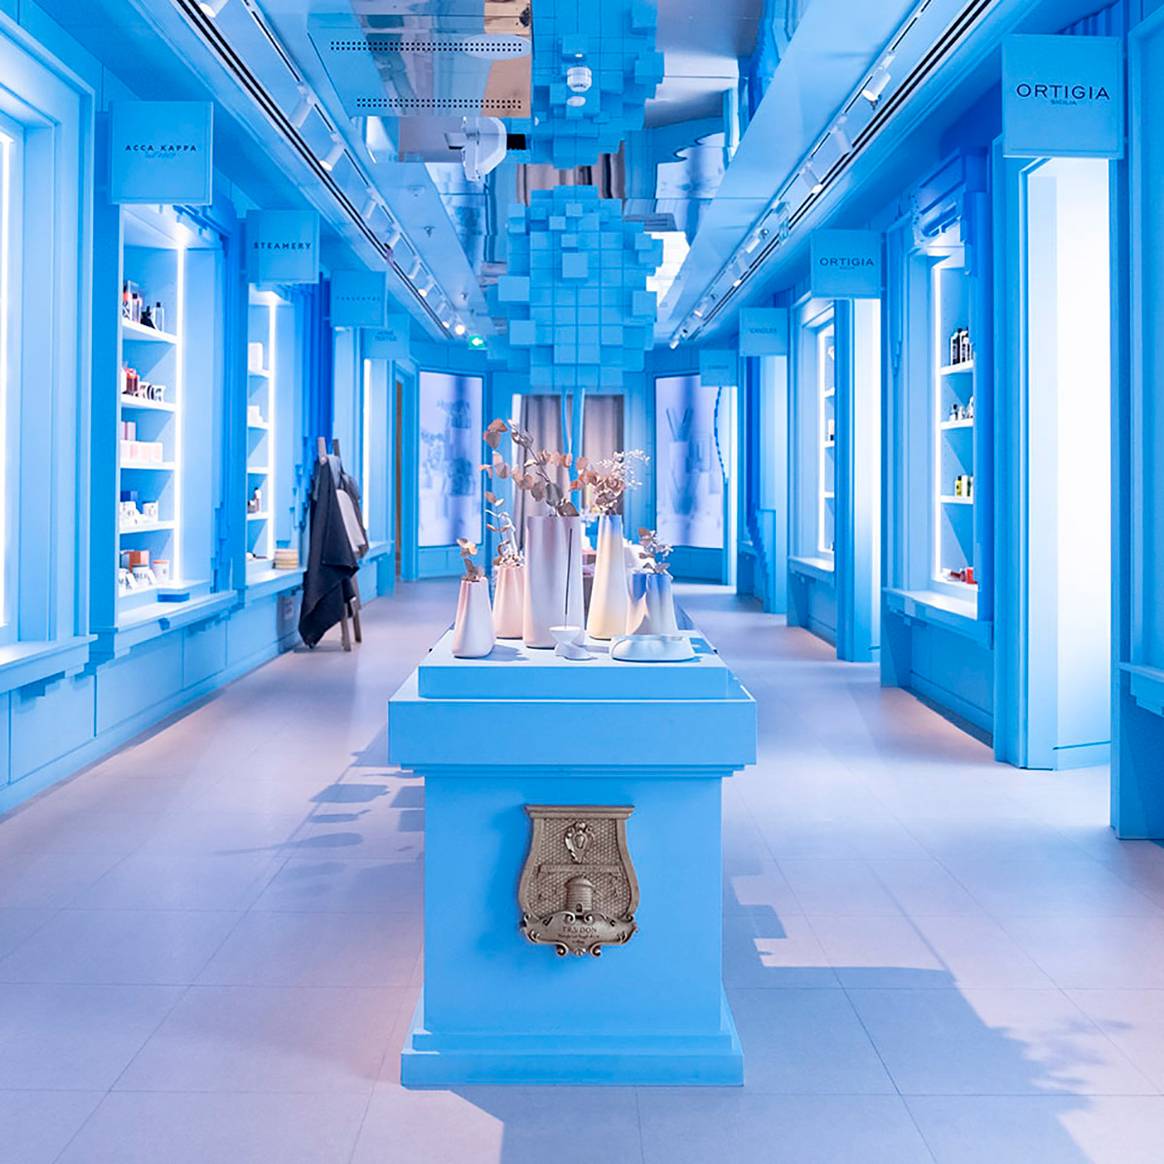 Photo Credits: Interior de la tienda Wow Concept en el número 18 de la Gran Vía de Madrid. Wow Concept, página oficial.